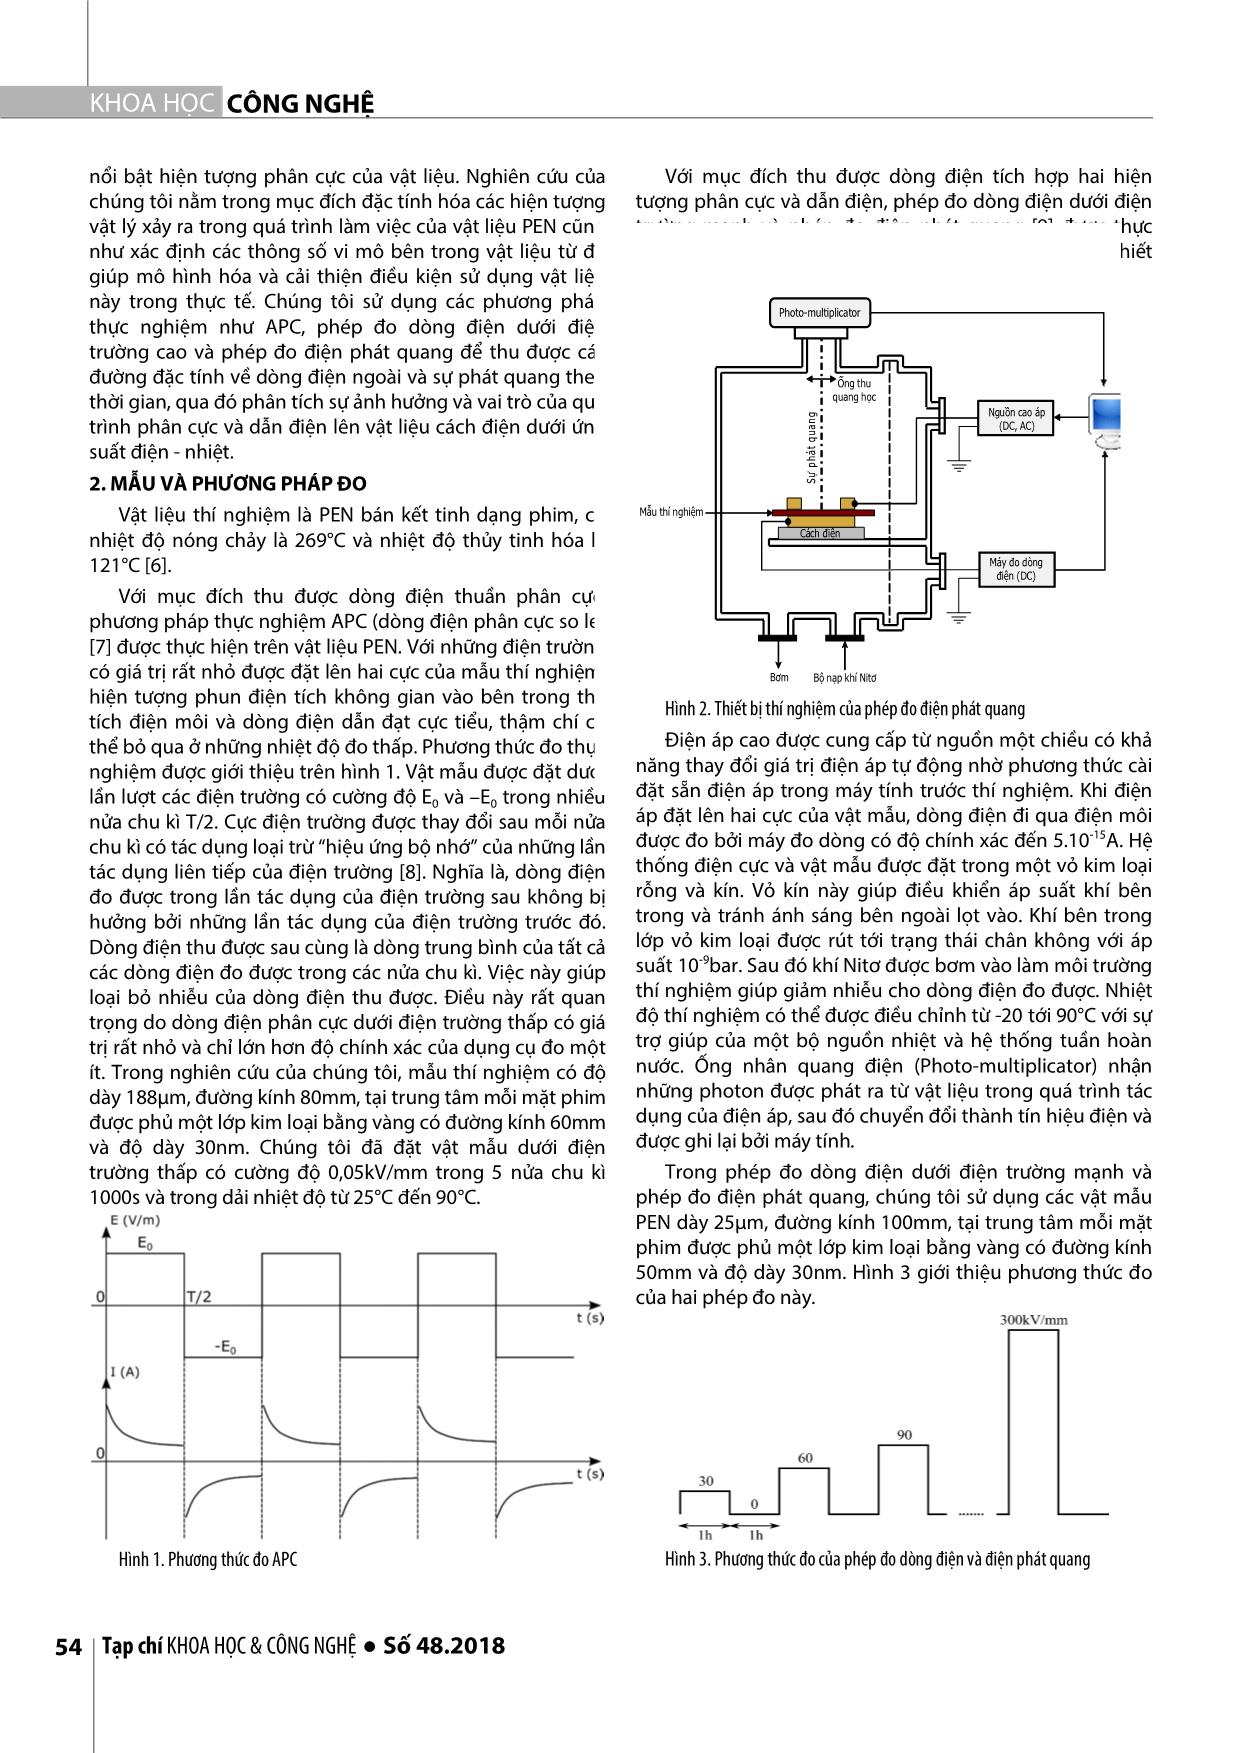 Quá trình phân cực và dẫn điện của vật liệu pen dưới ứng suất điện - nhiệt trang 2